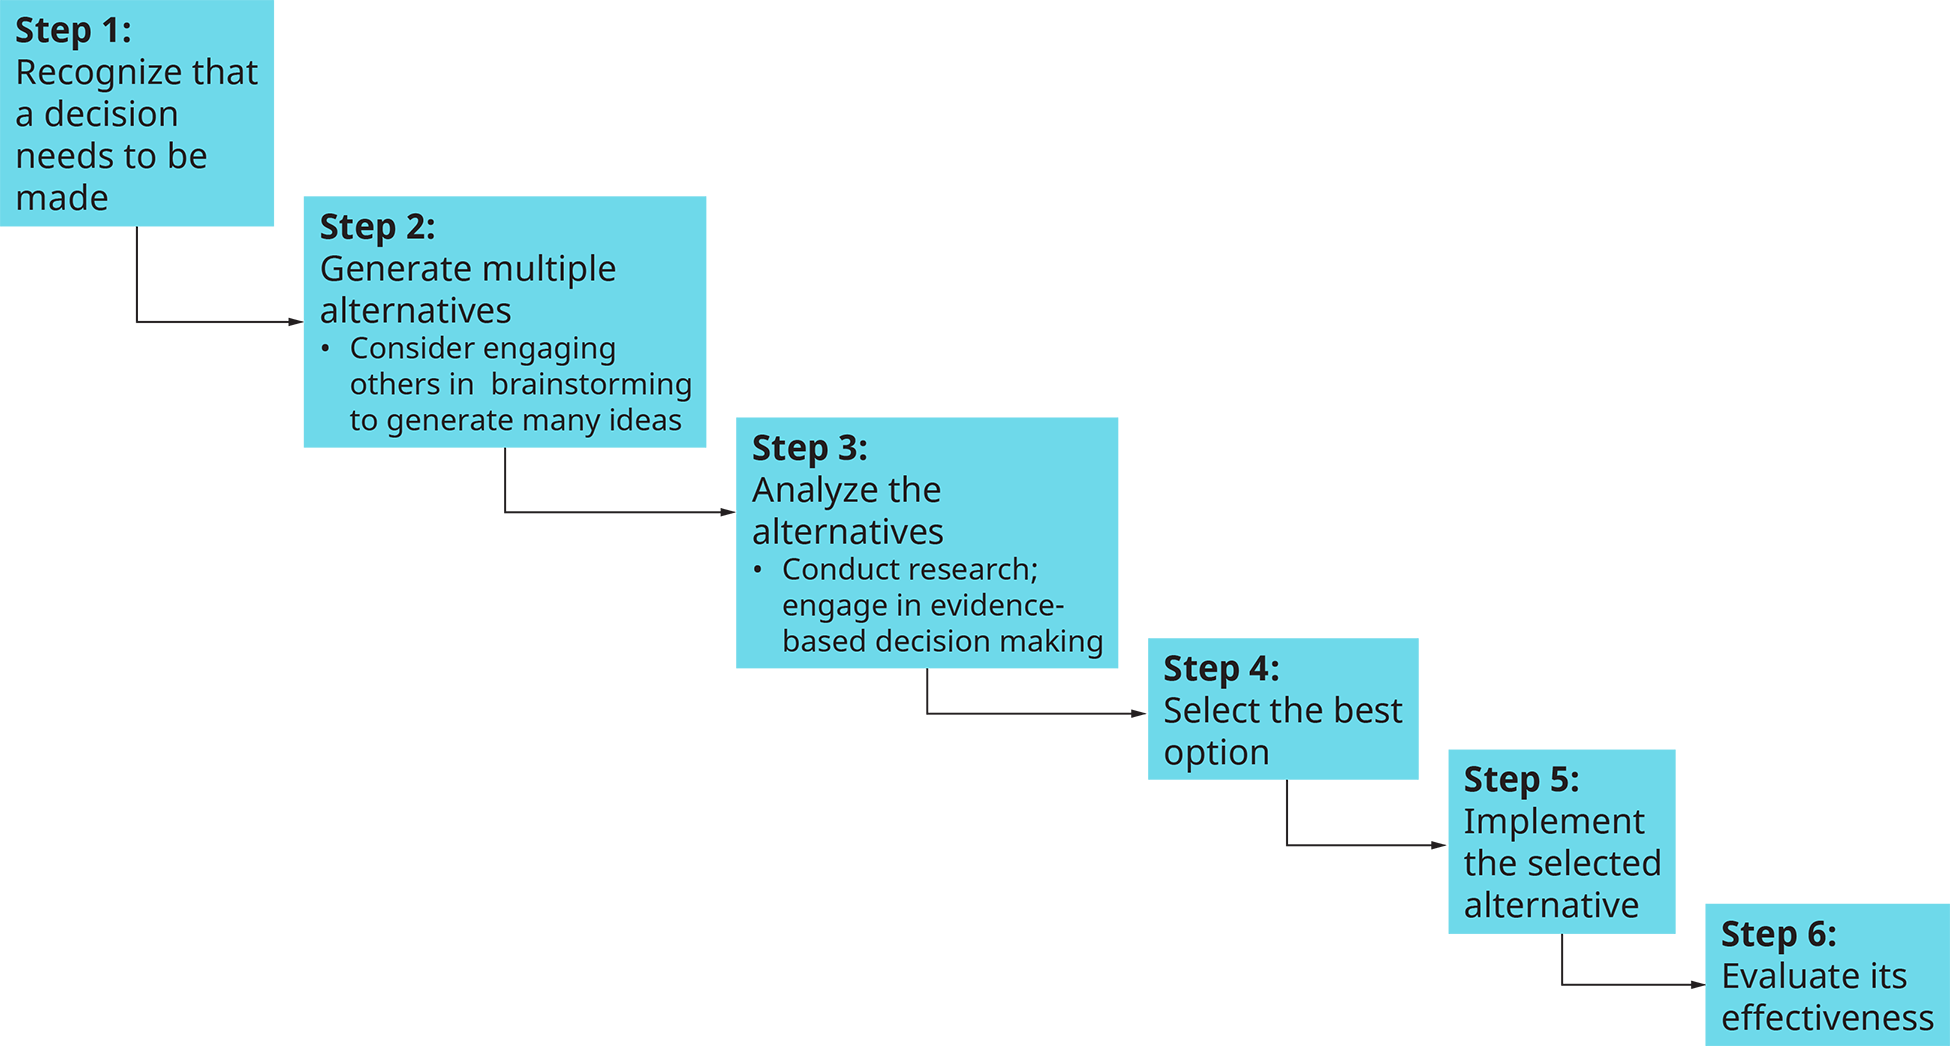 Un diagrama de flujo muestra los seis pasos en el proceso de toma de decisiones.